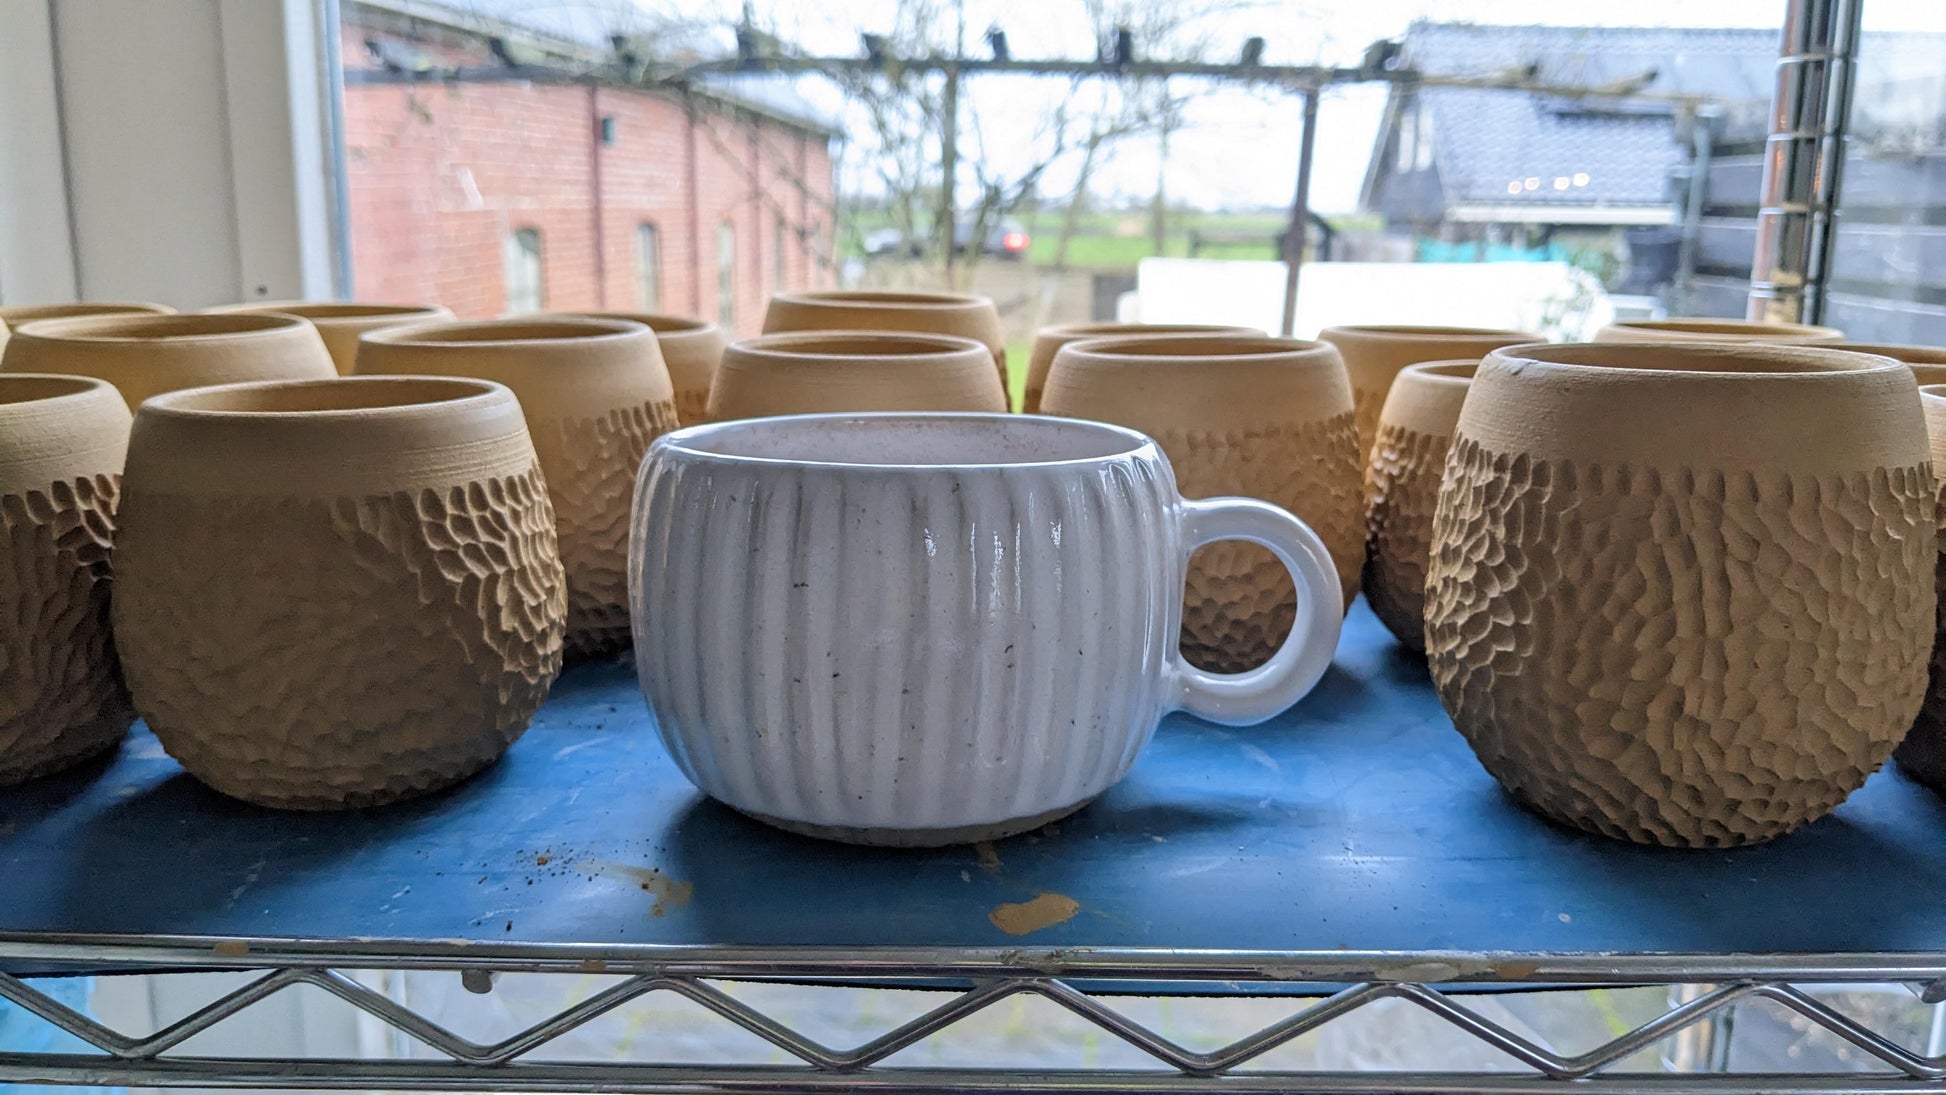 thinkstar 12 Pcs Pottery Mug Handle Molds For Clay, Mug Handle